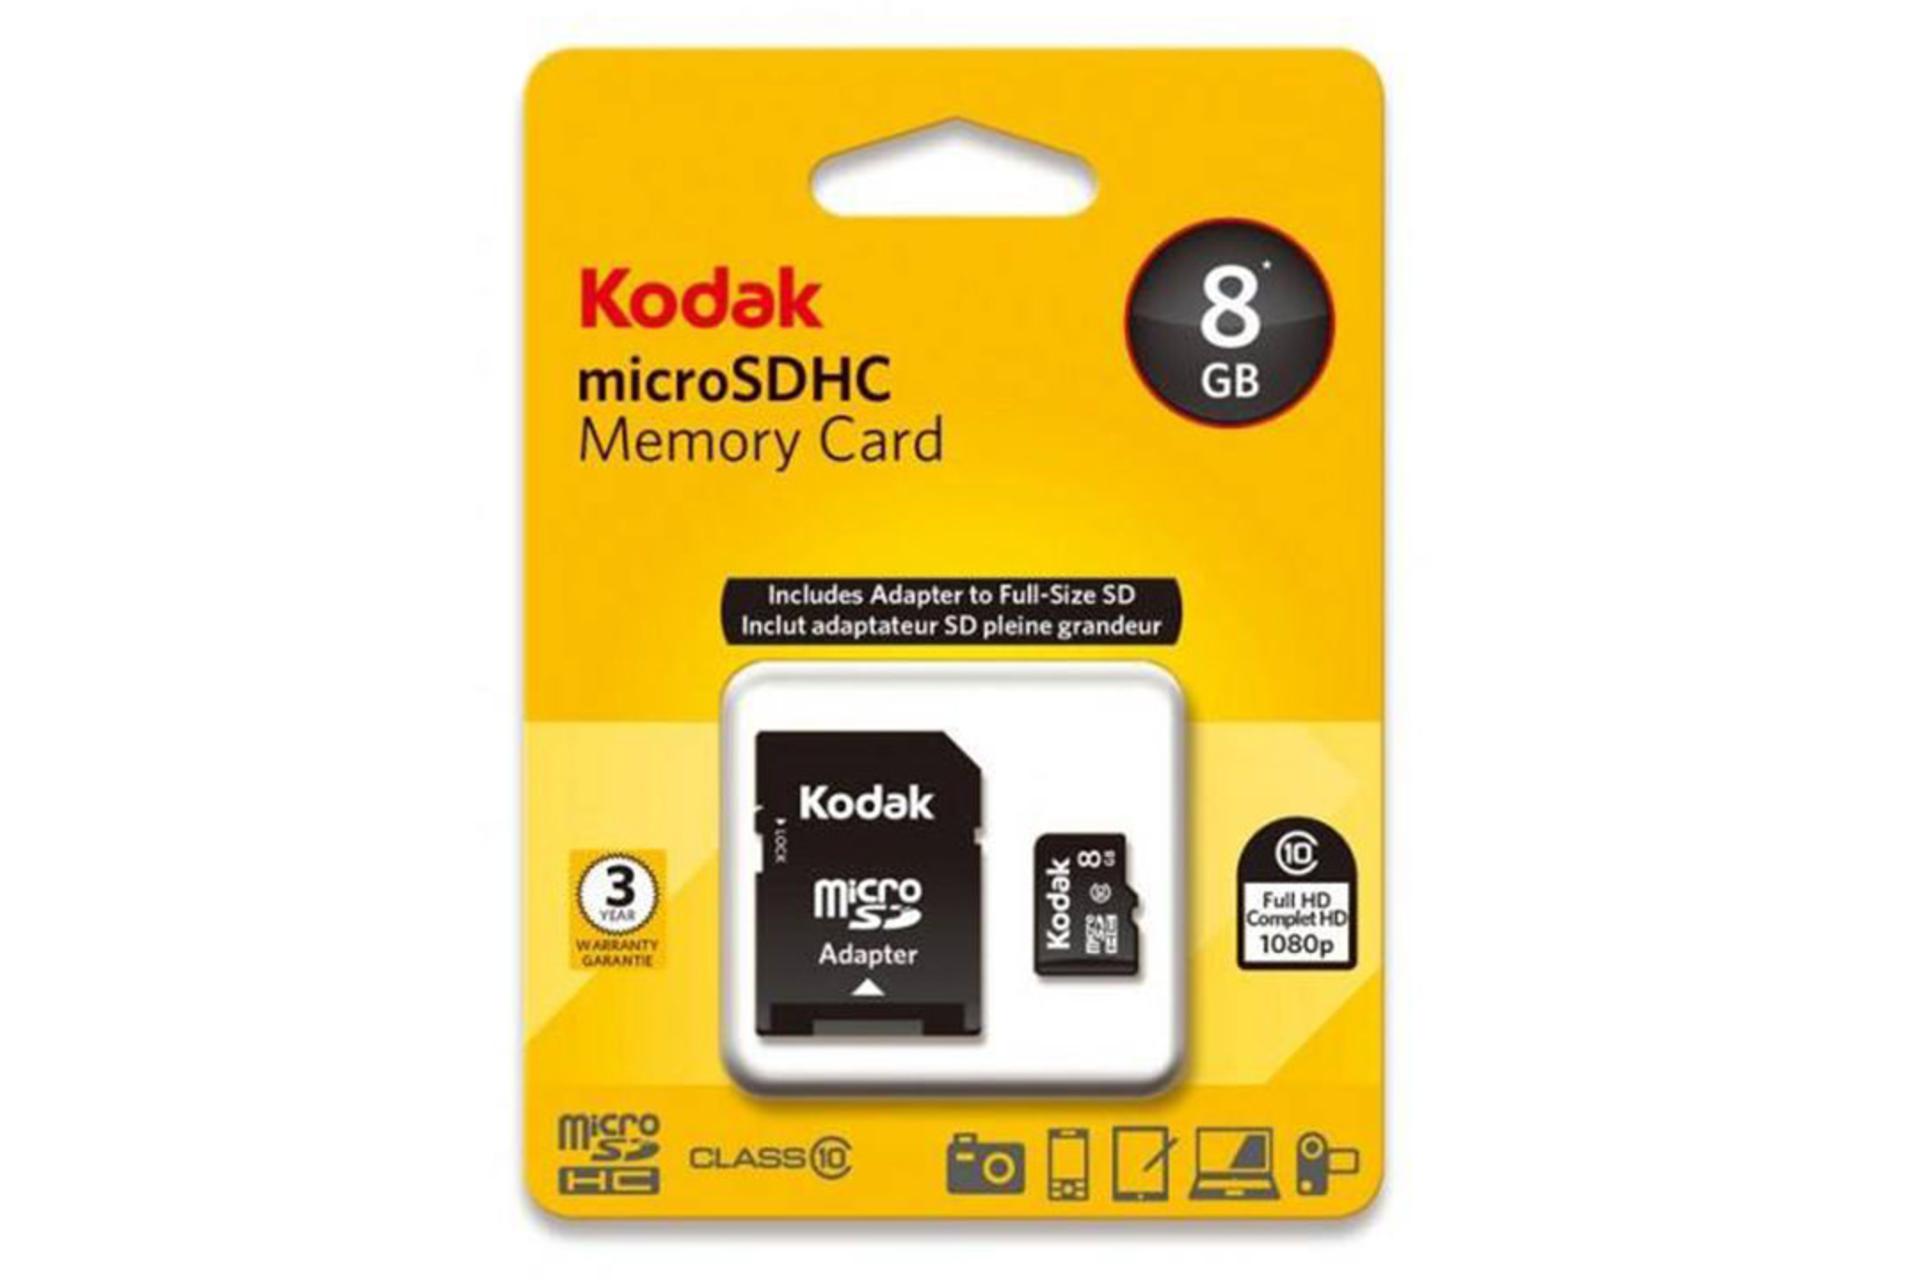 Kodak microSDHC Class 10 UHS-I U1 8GB